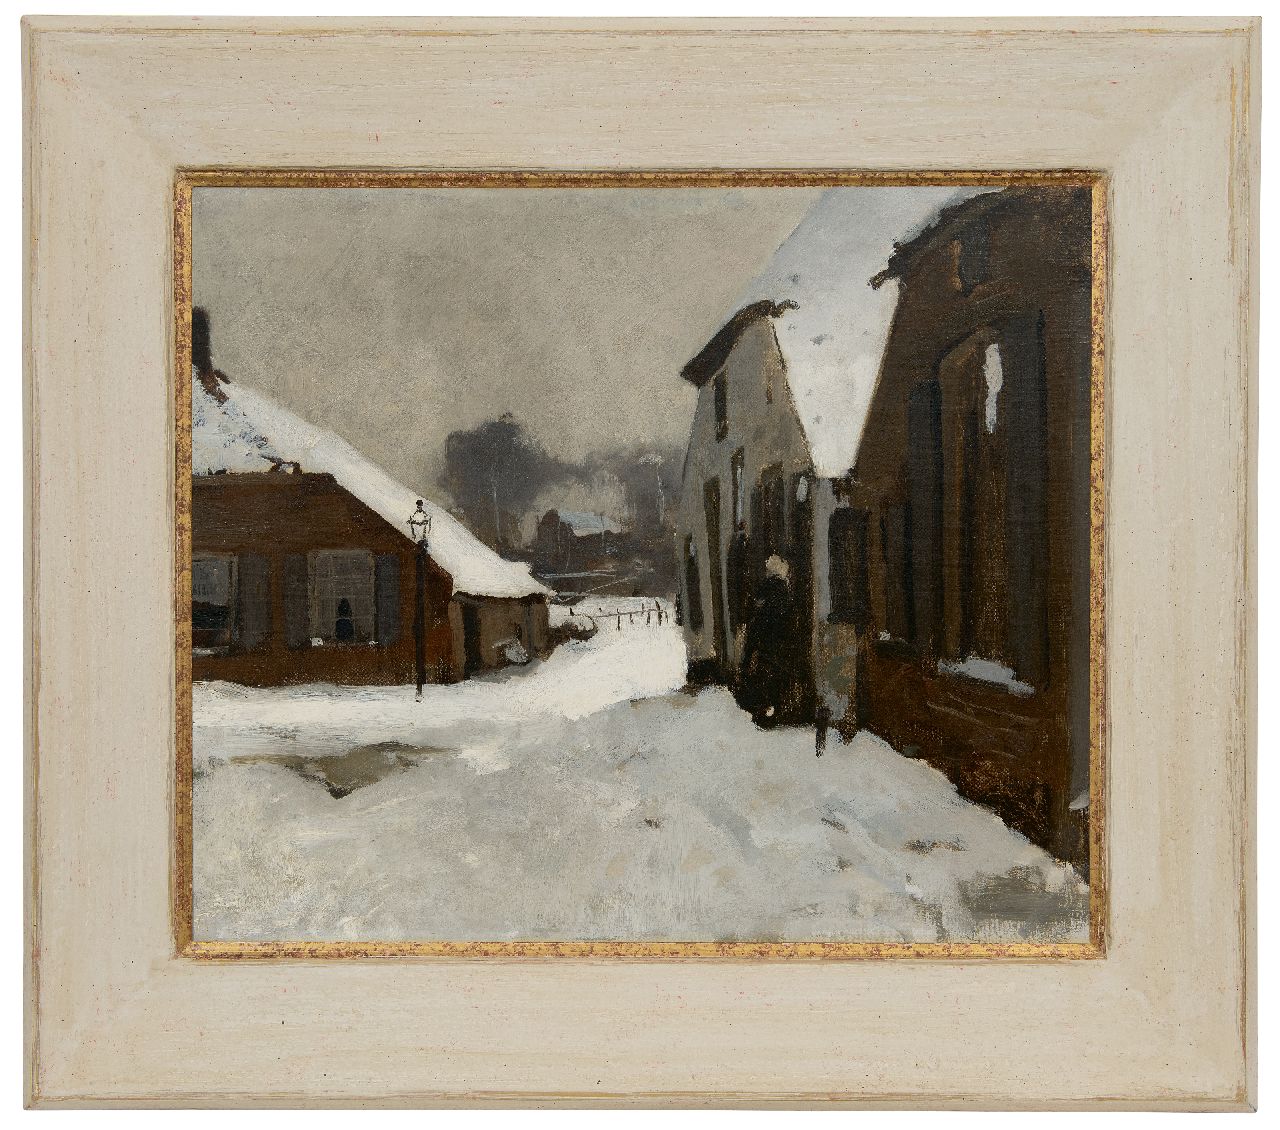 Witsen W.A.  | 'Willem' Arnold Witsen | Gemälde zum Verkauf angeboten | Winter in Ede, oil on canvas 55,2 x 66,5 cm, zu datieren um 1895-1902